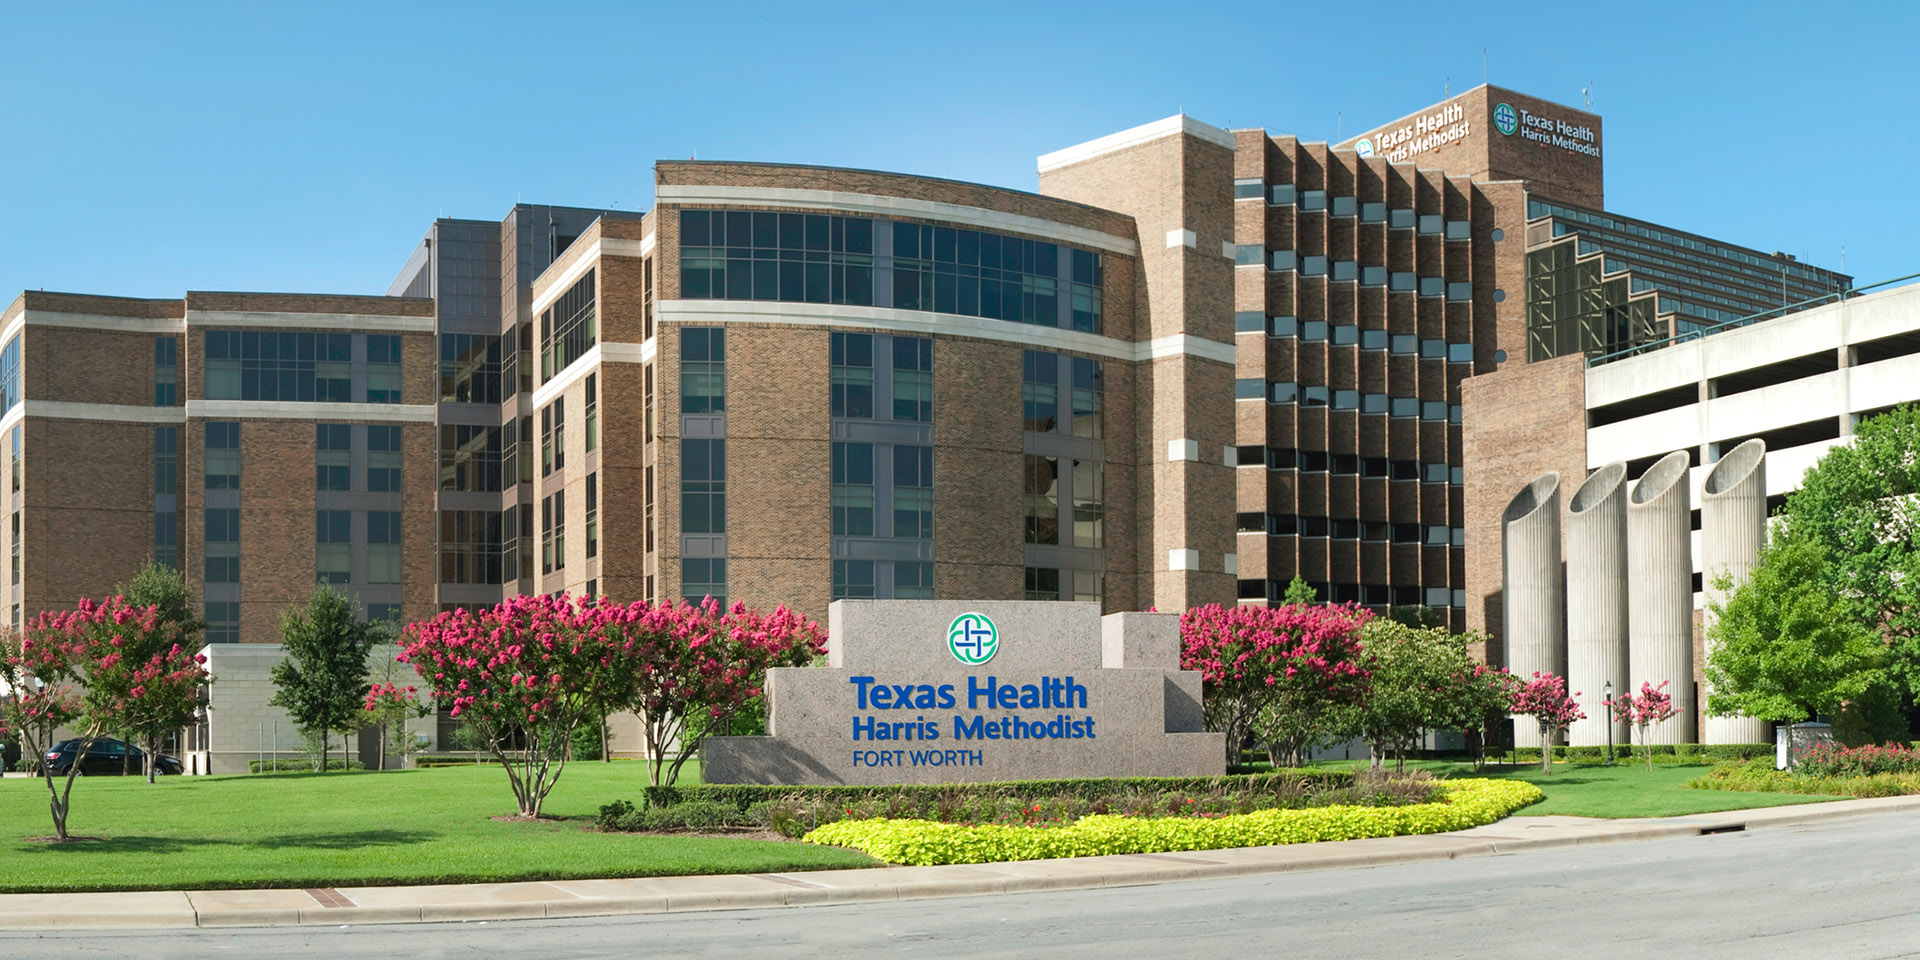 Texas Health Harris Methodist Hospital Fort Worth